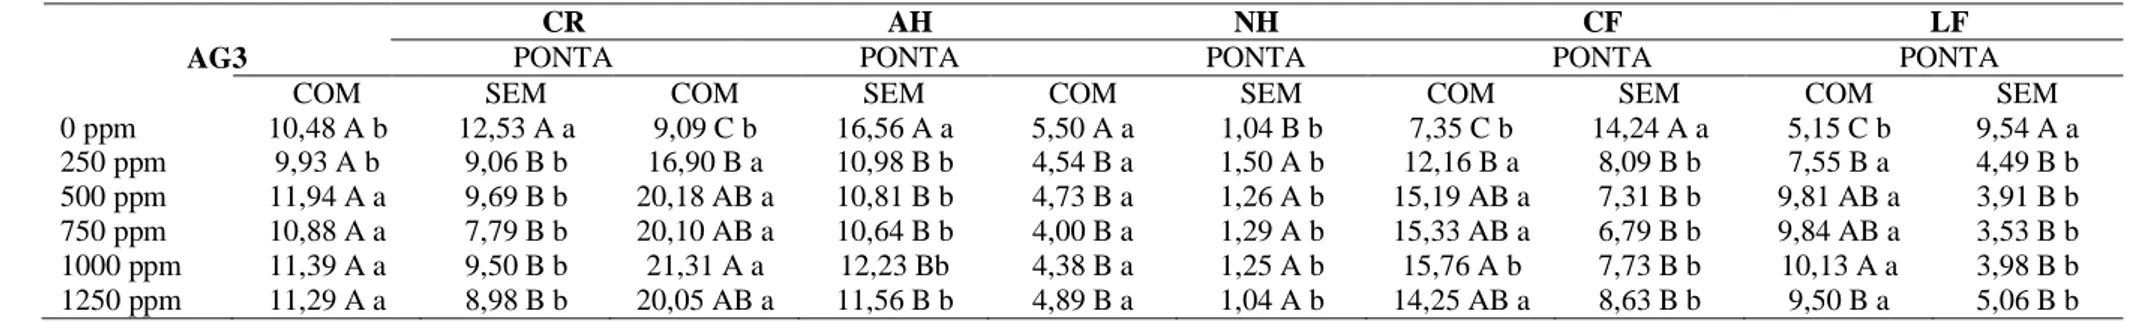 TABELA  2  –   Média  das  variáveis  analisadas  aos  30  dias  após  o  plantio:  comprimento  de raiz  (CR),  altura  de  haste  (AH),  numero  de  hastes  (NH),  comprimento  de  folha  (CF)  e  largura  de  folha  (LF)  de  plantas  de  Caladium ‘Frie